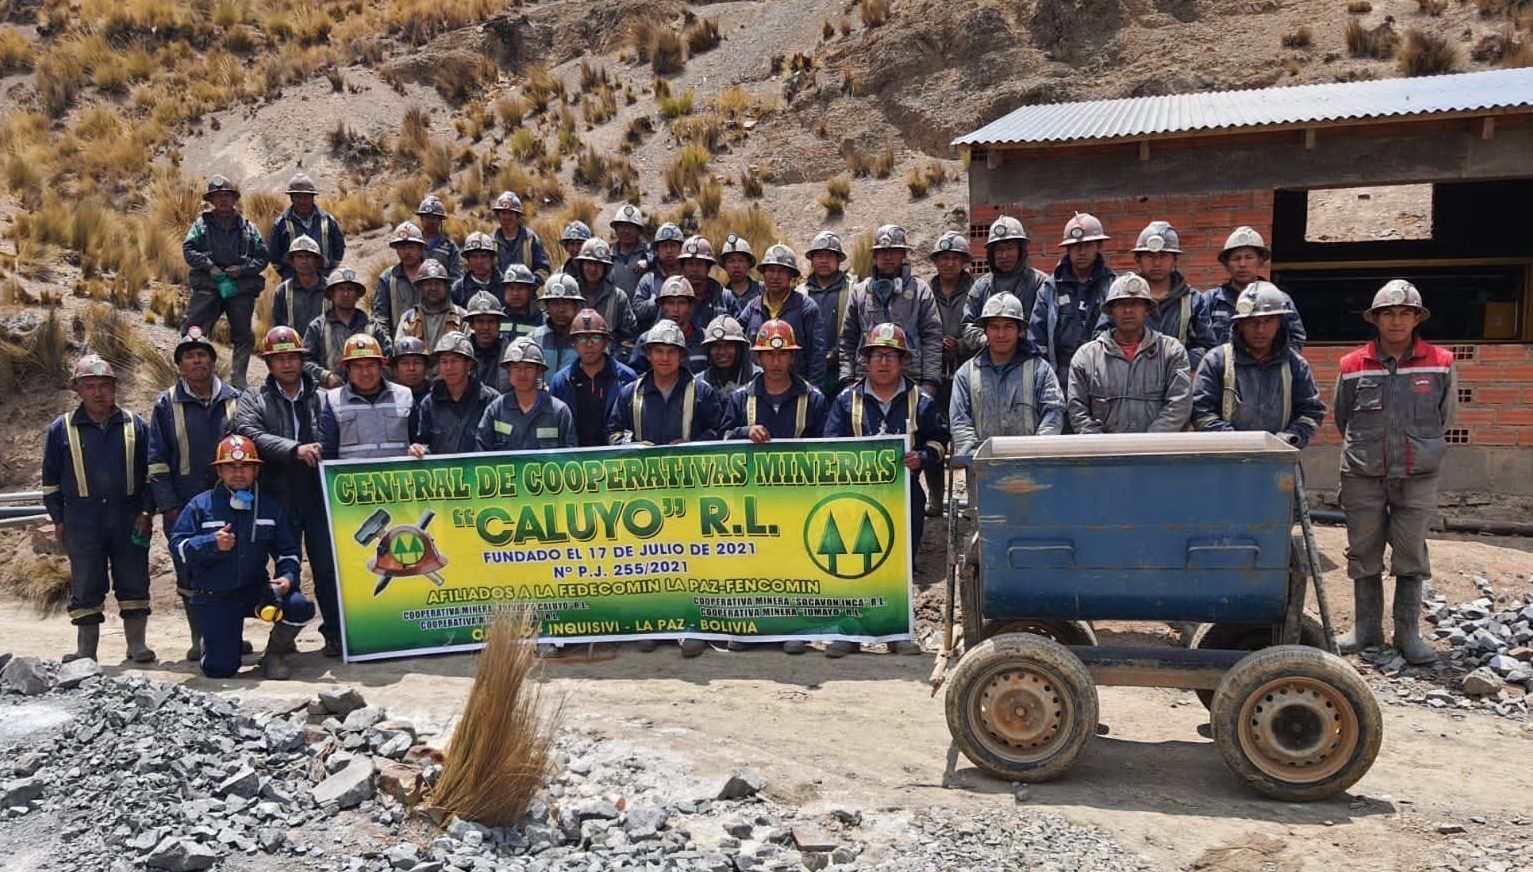 Evaluaron a perforistas de la Central de Cooperativas Mineras «Caluyo» R.L.